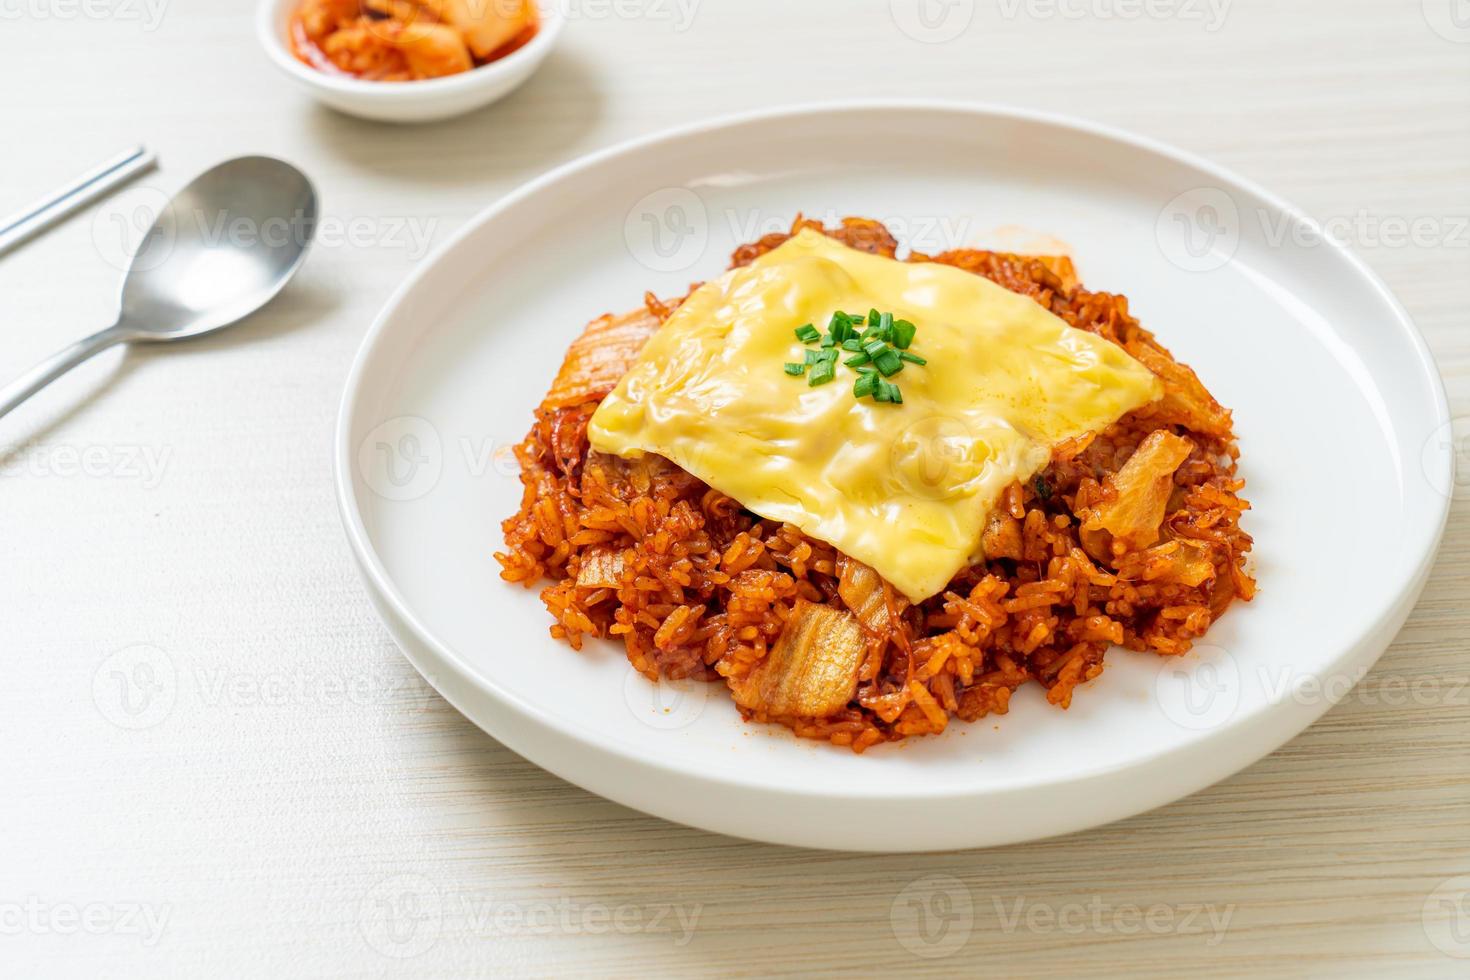 arroz frito con kimchi con cerdo y queso cubierto - estilo de comida asiática y fusión foto